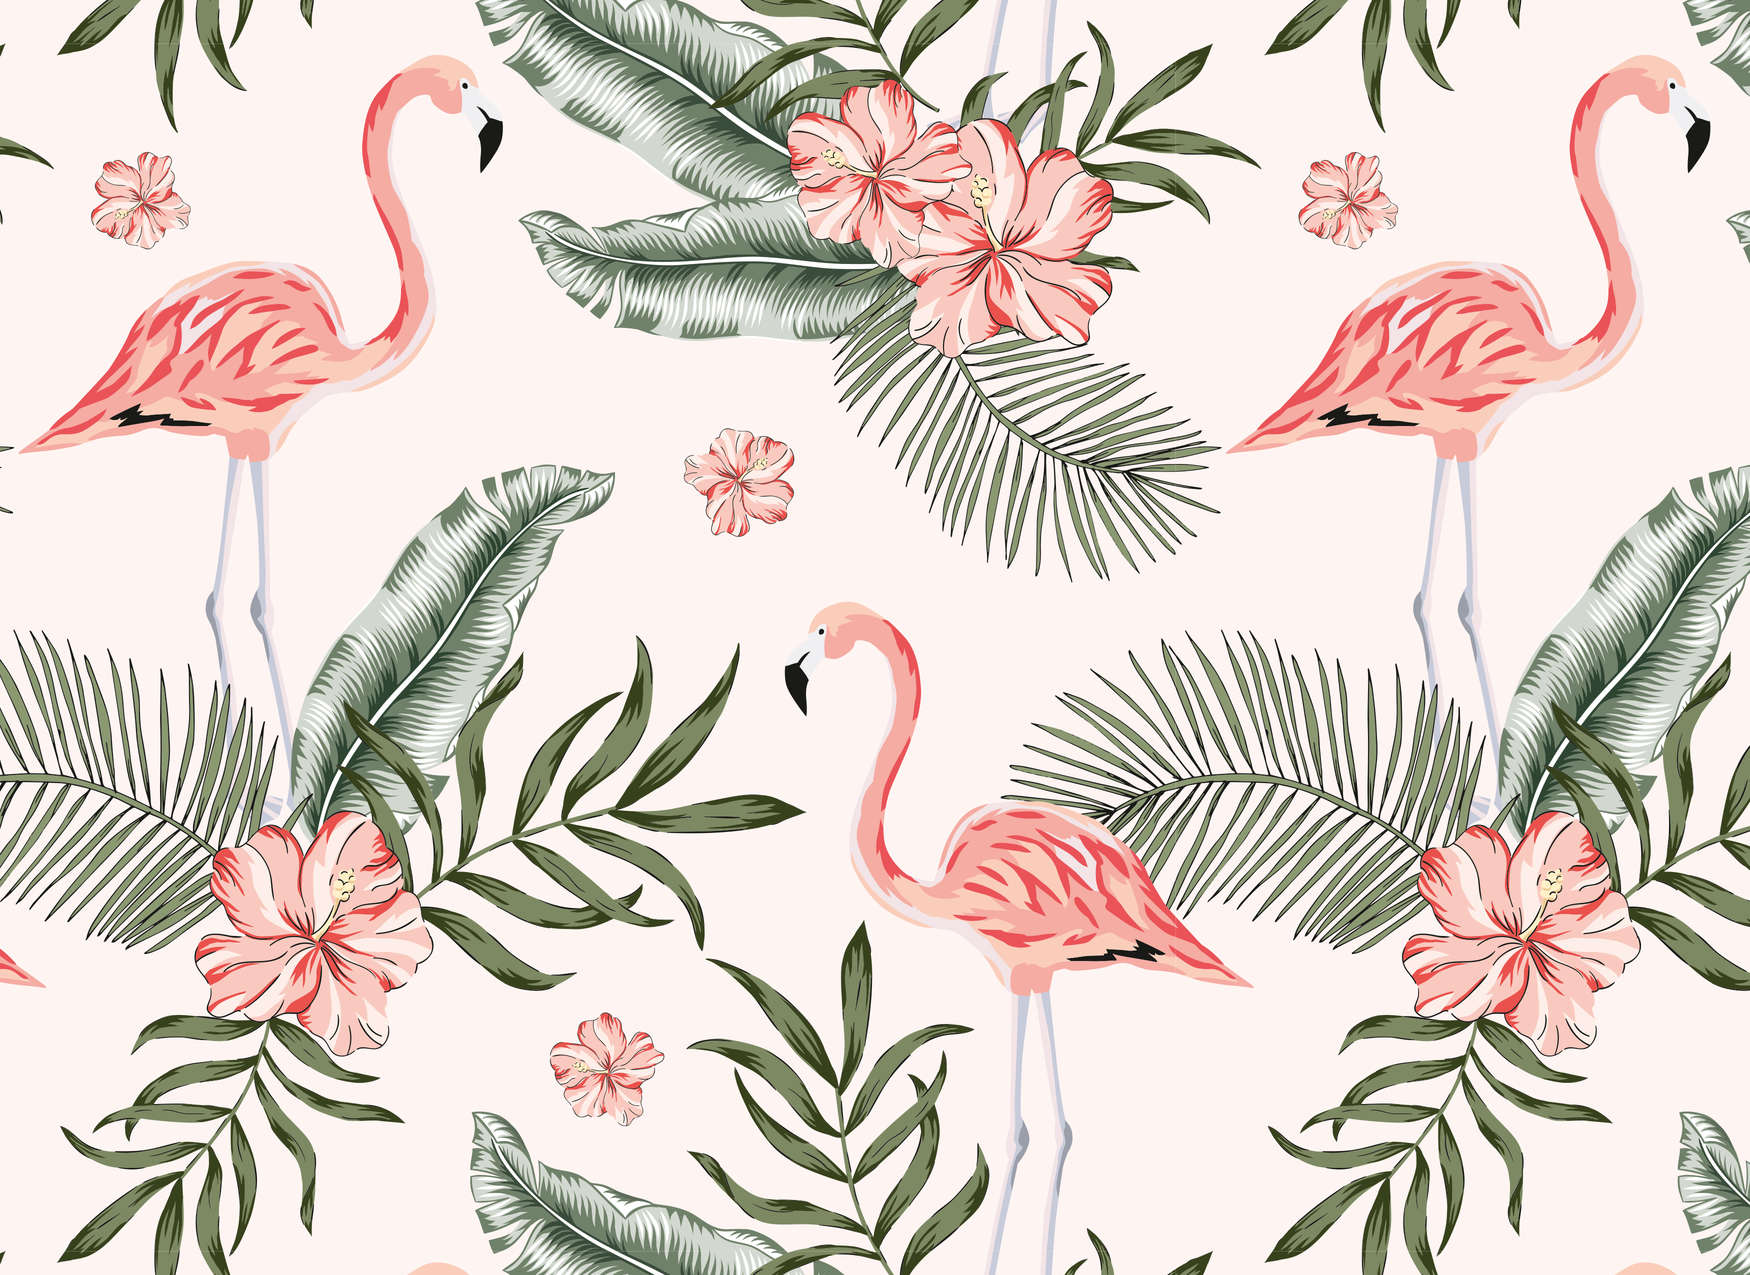             Flamencos y plantas tropicales - blanco, rosa, verde
        